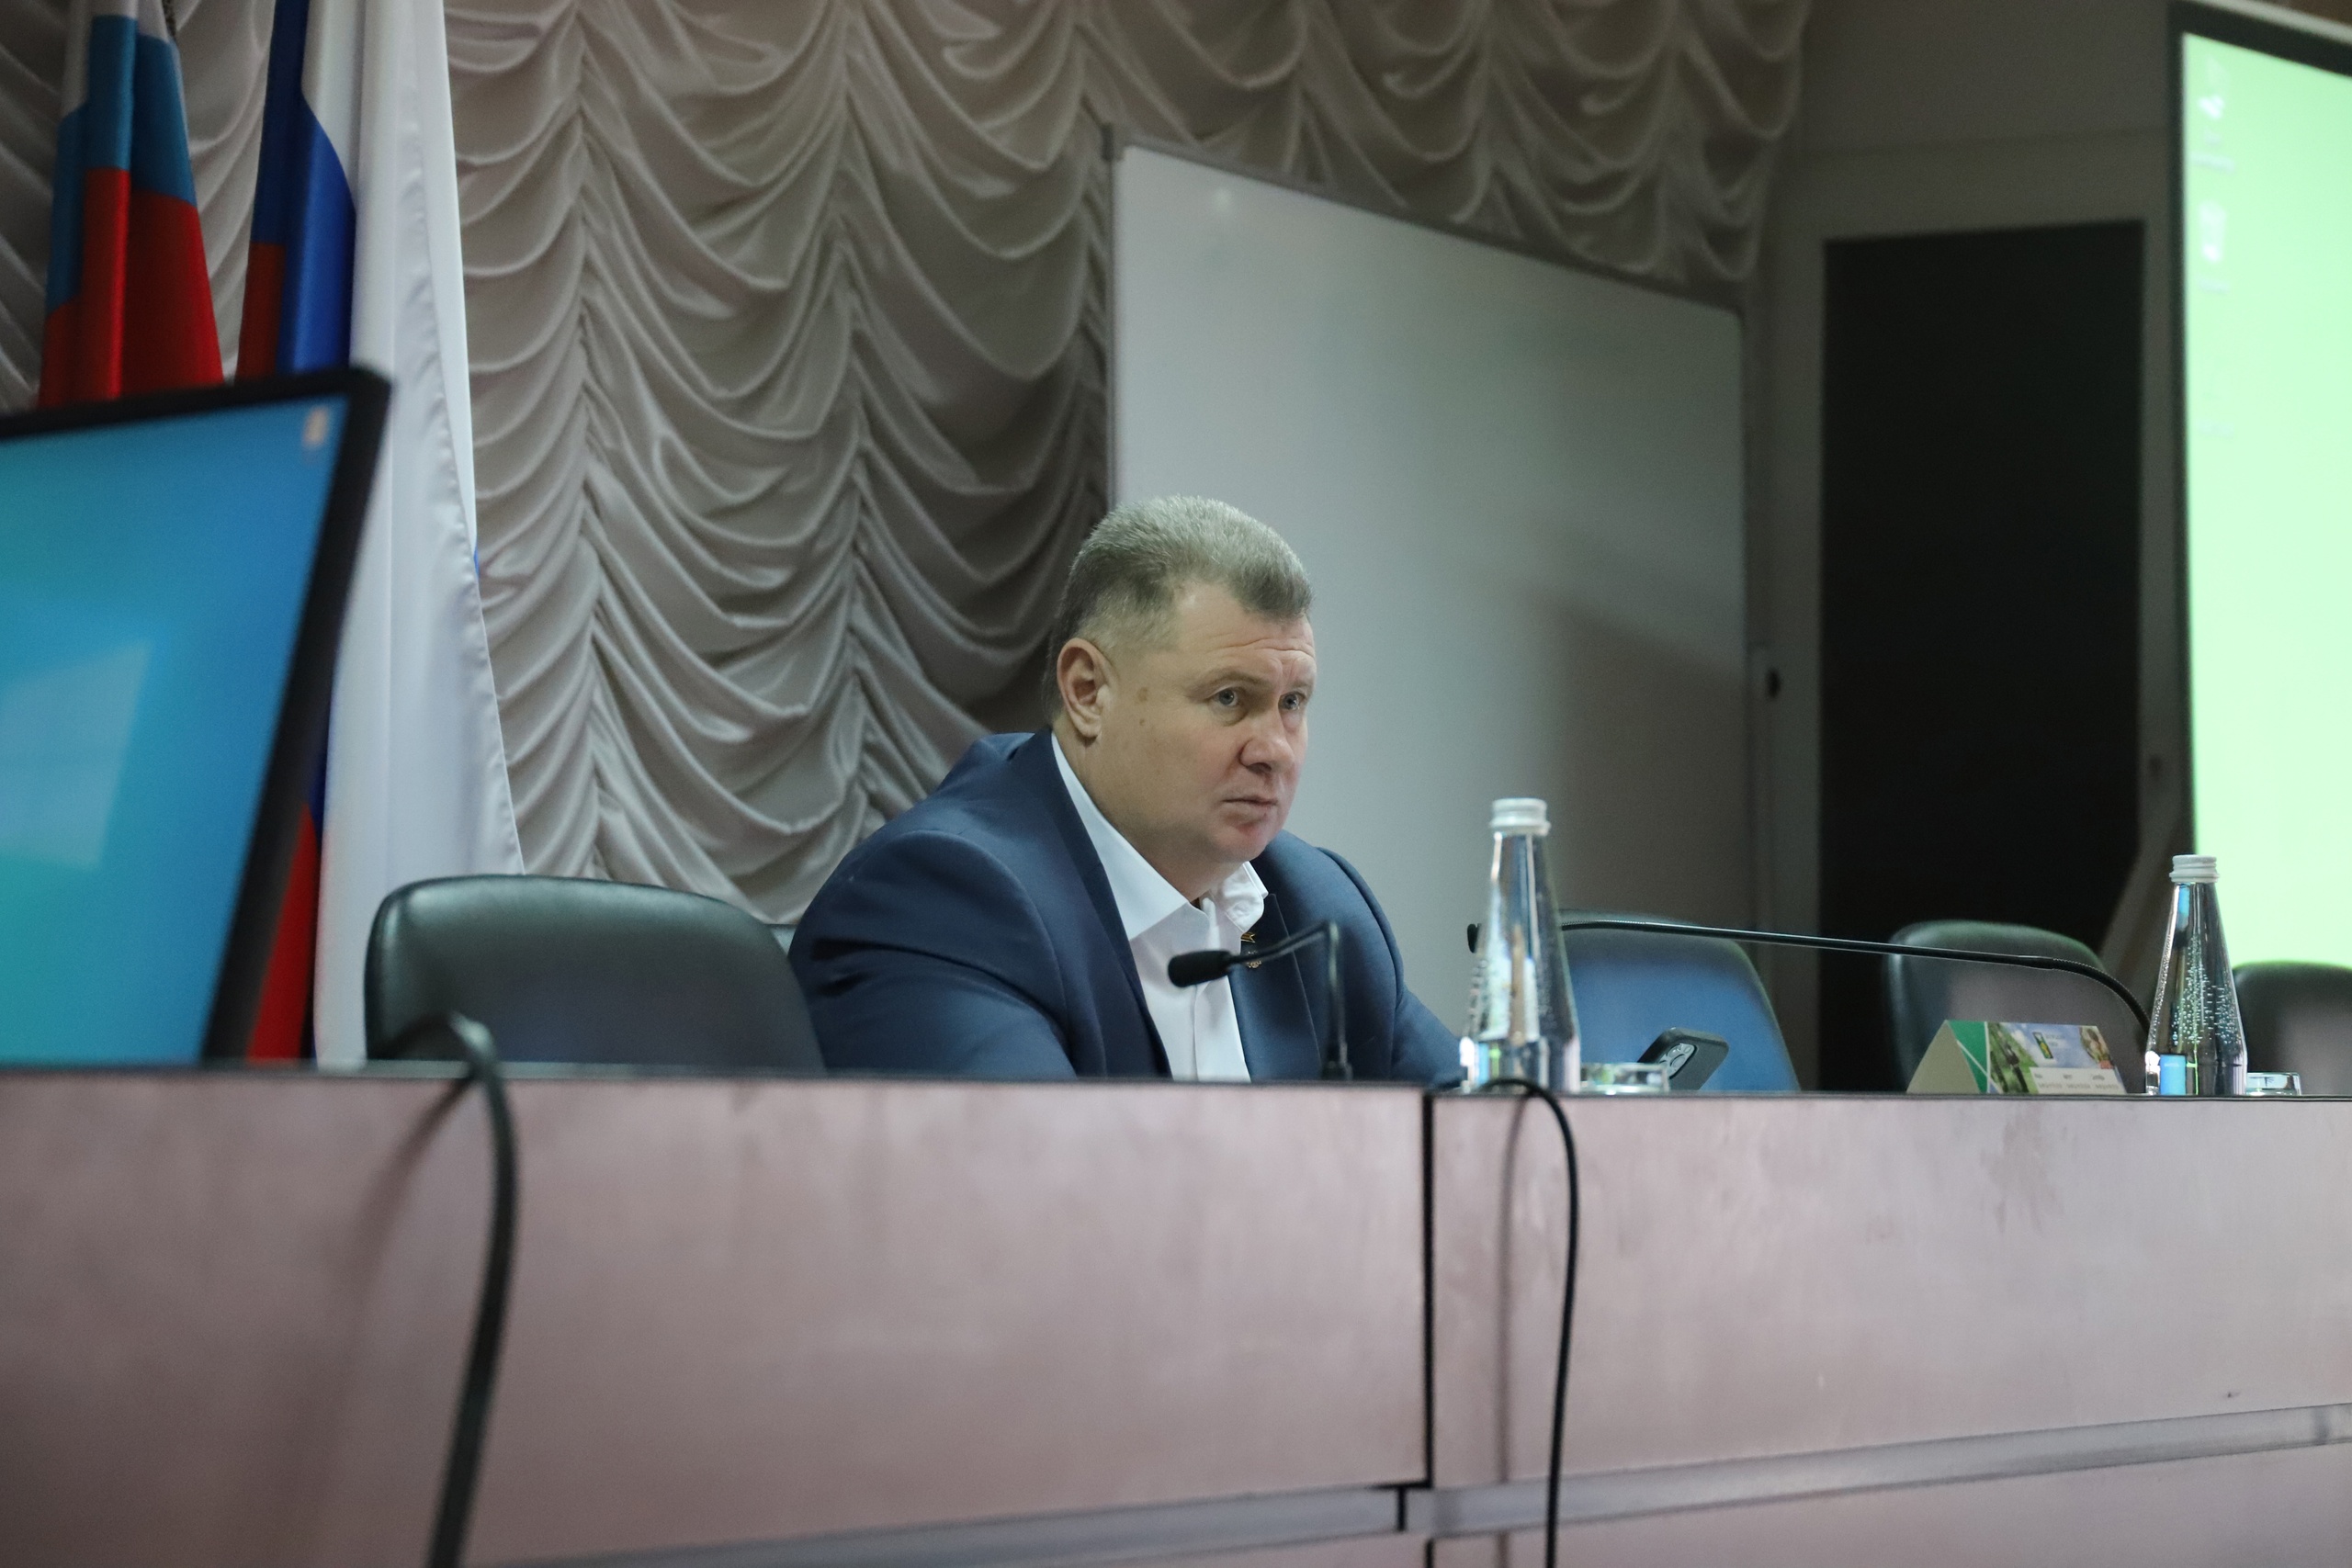 Глава администрации Белгородского района Владимир Перцев проведёт традиционную большую прямую линию в своих социальных сетях.